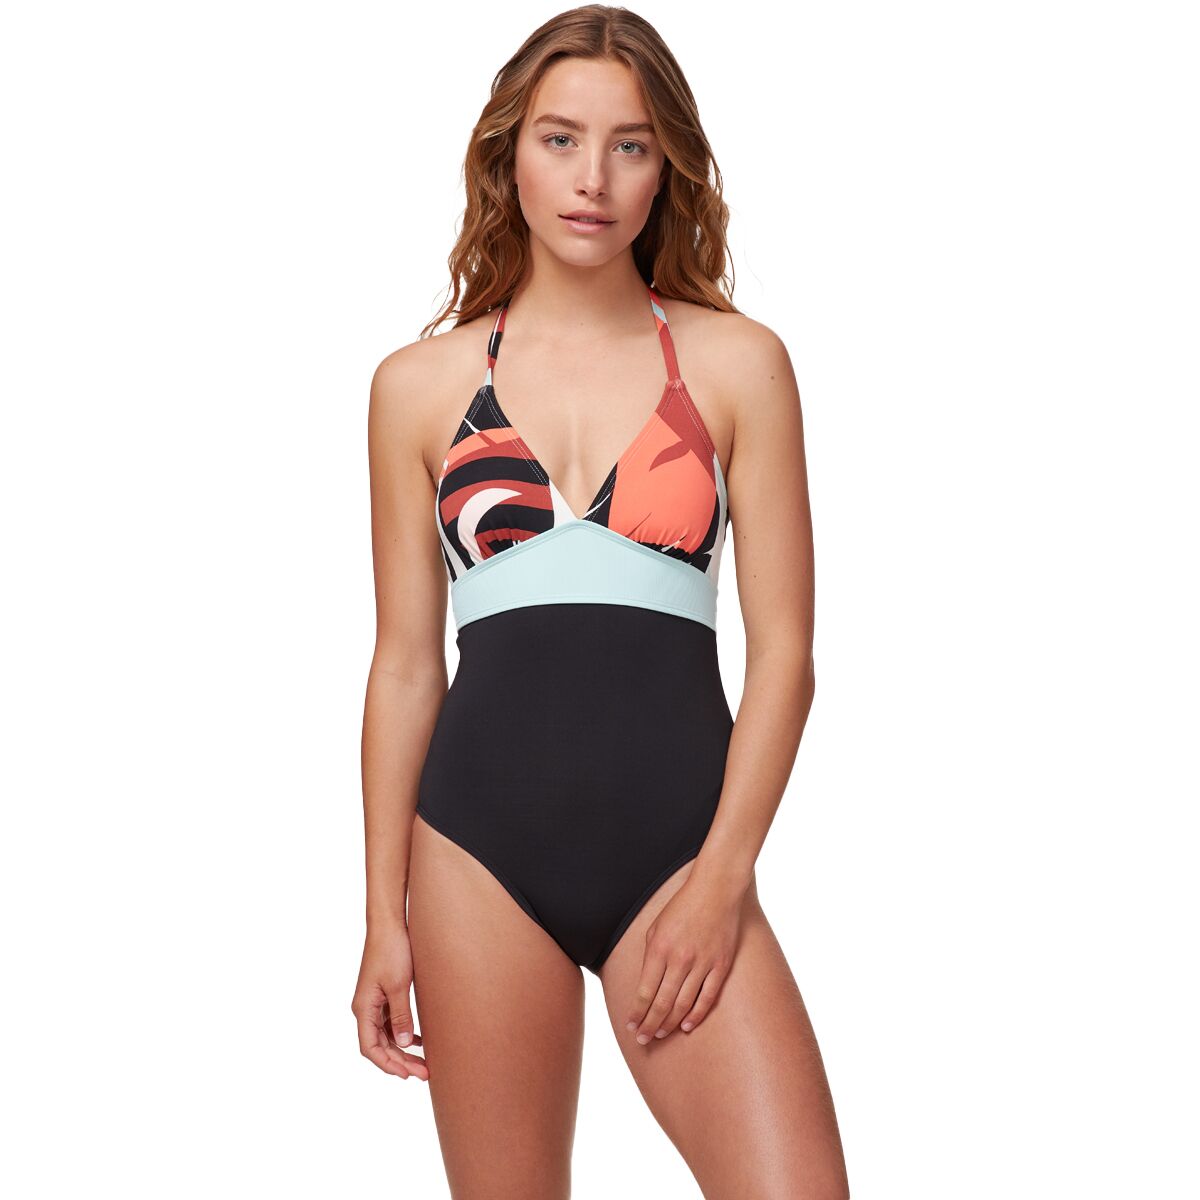 Dahlia One-Piece Swimsuit - Women